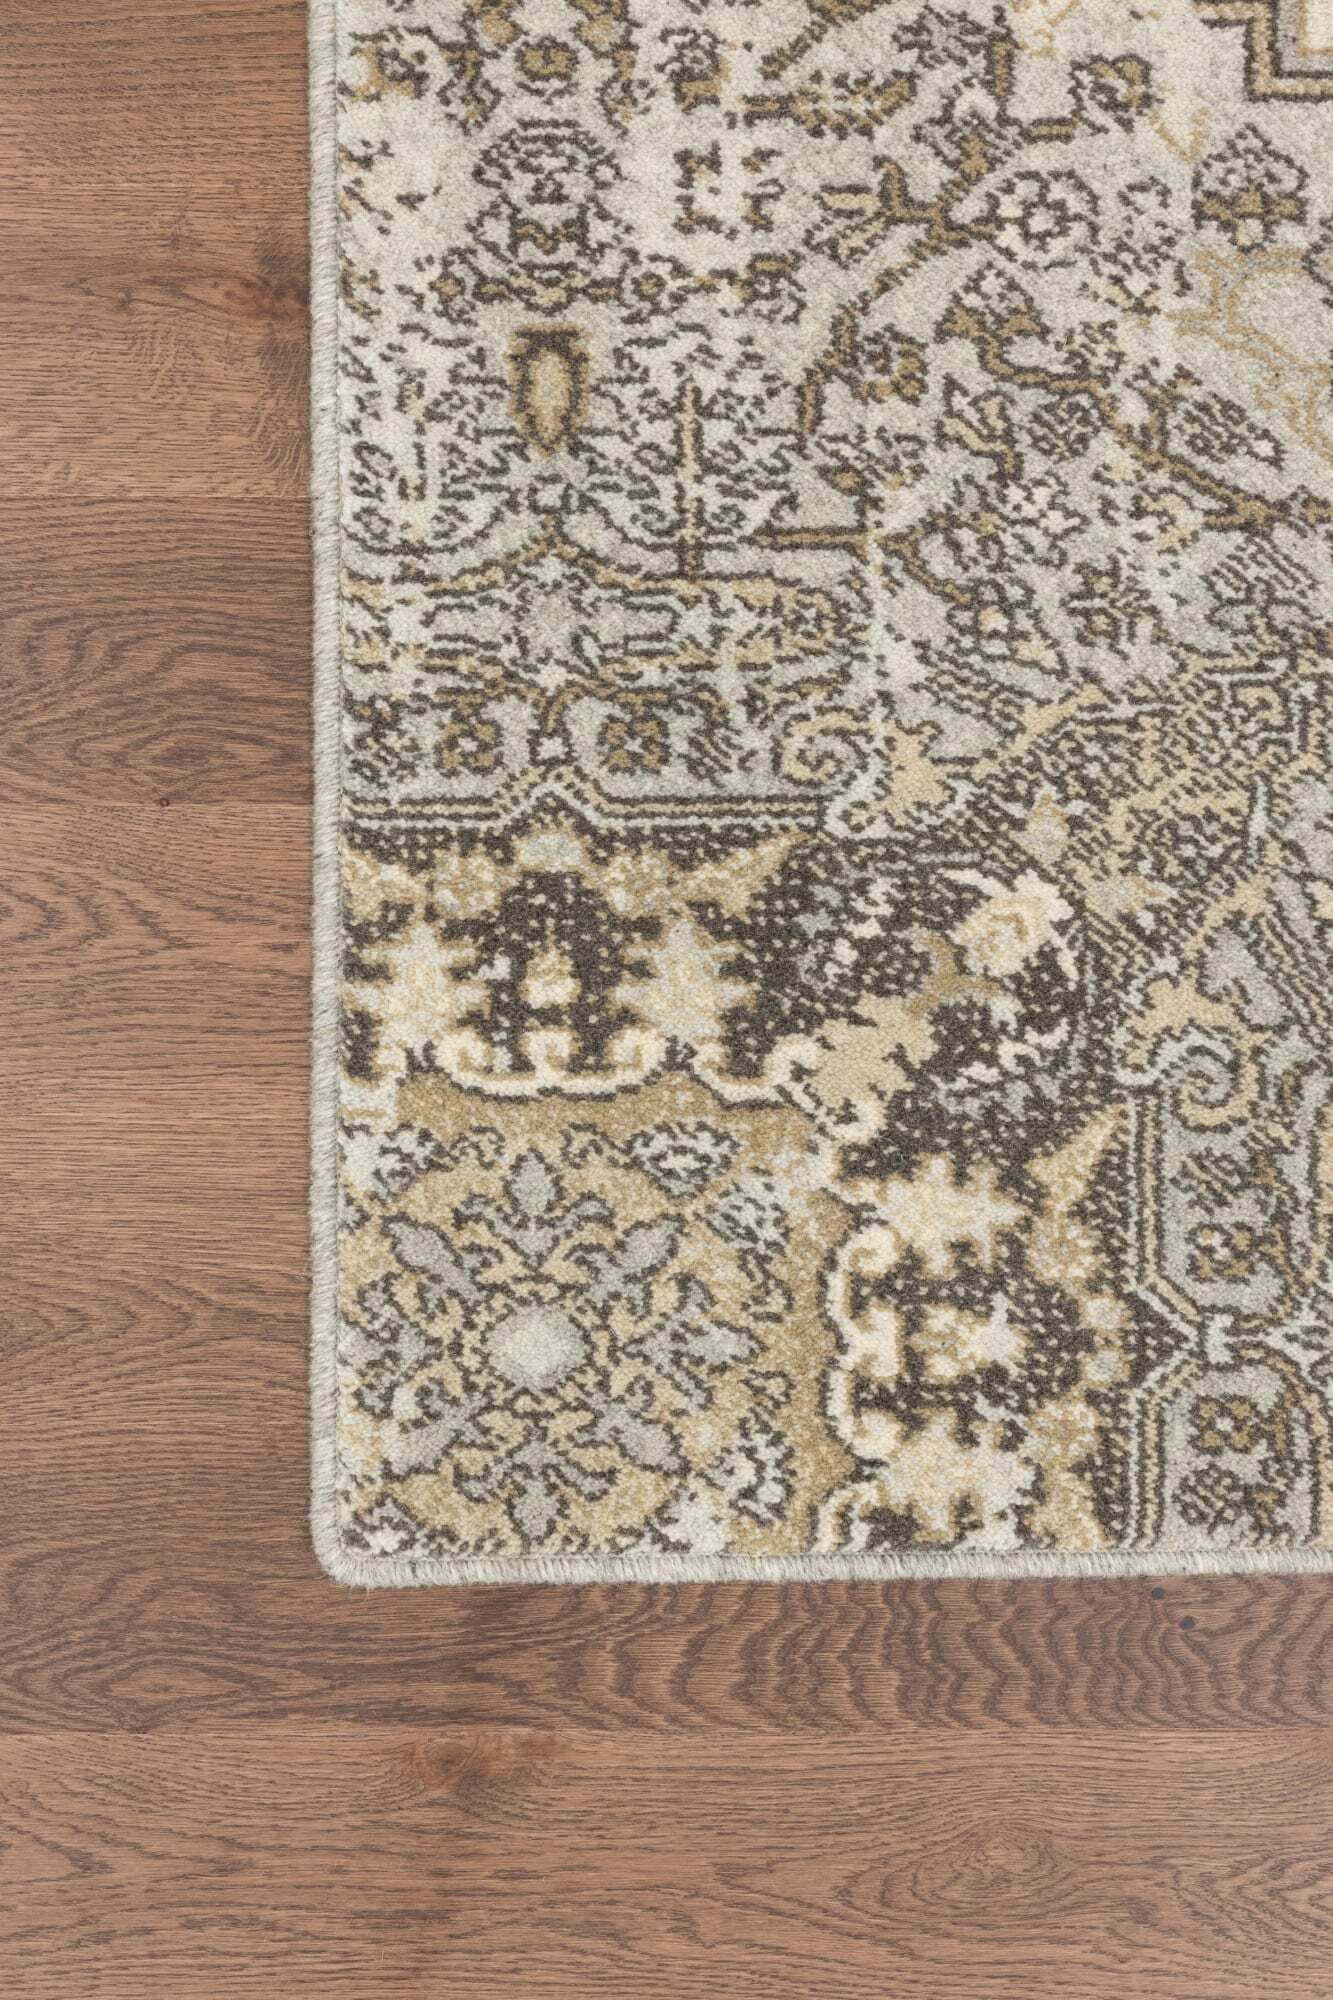 Huviel Grey rug by Agnella